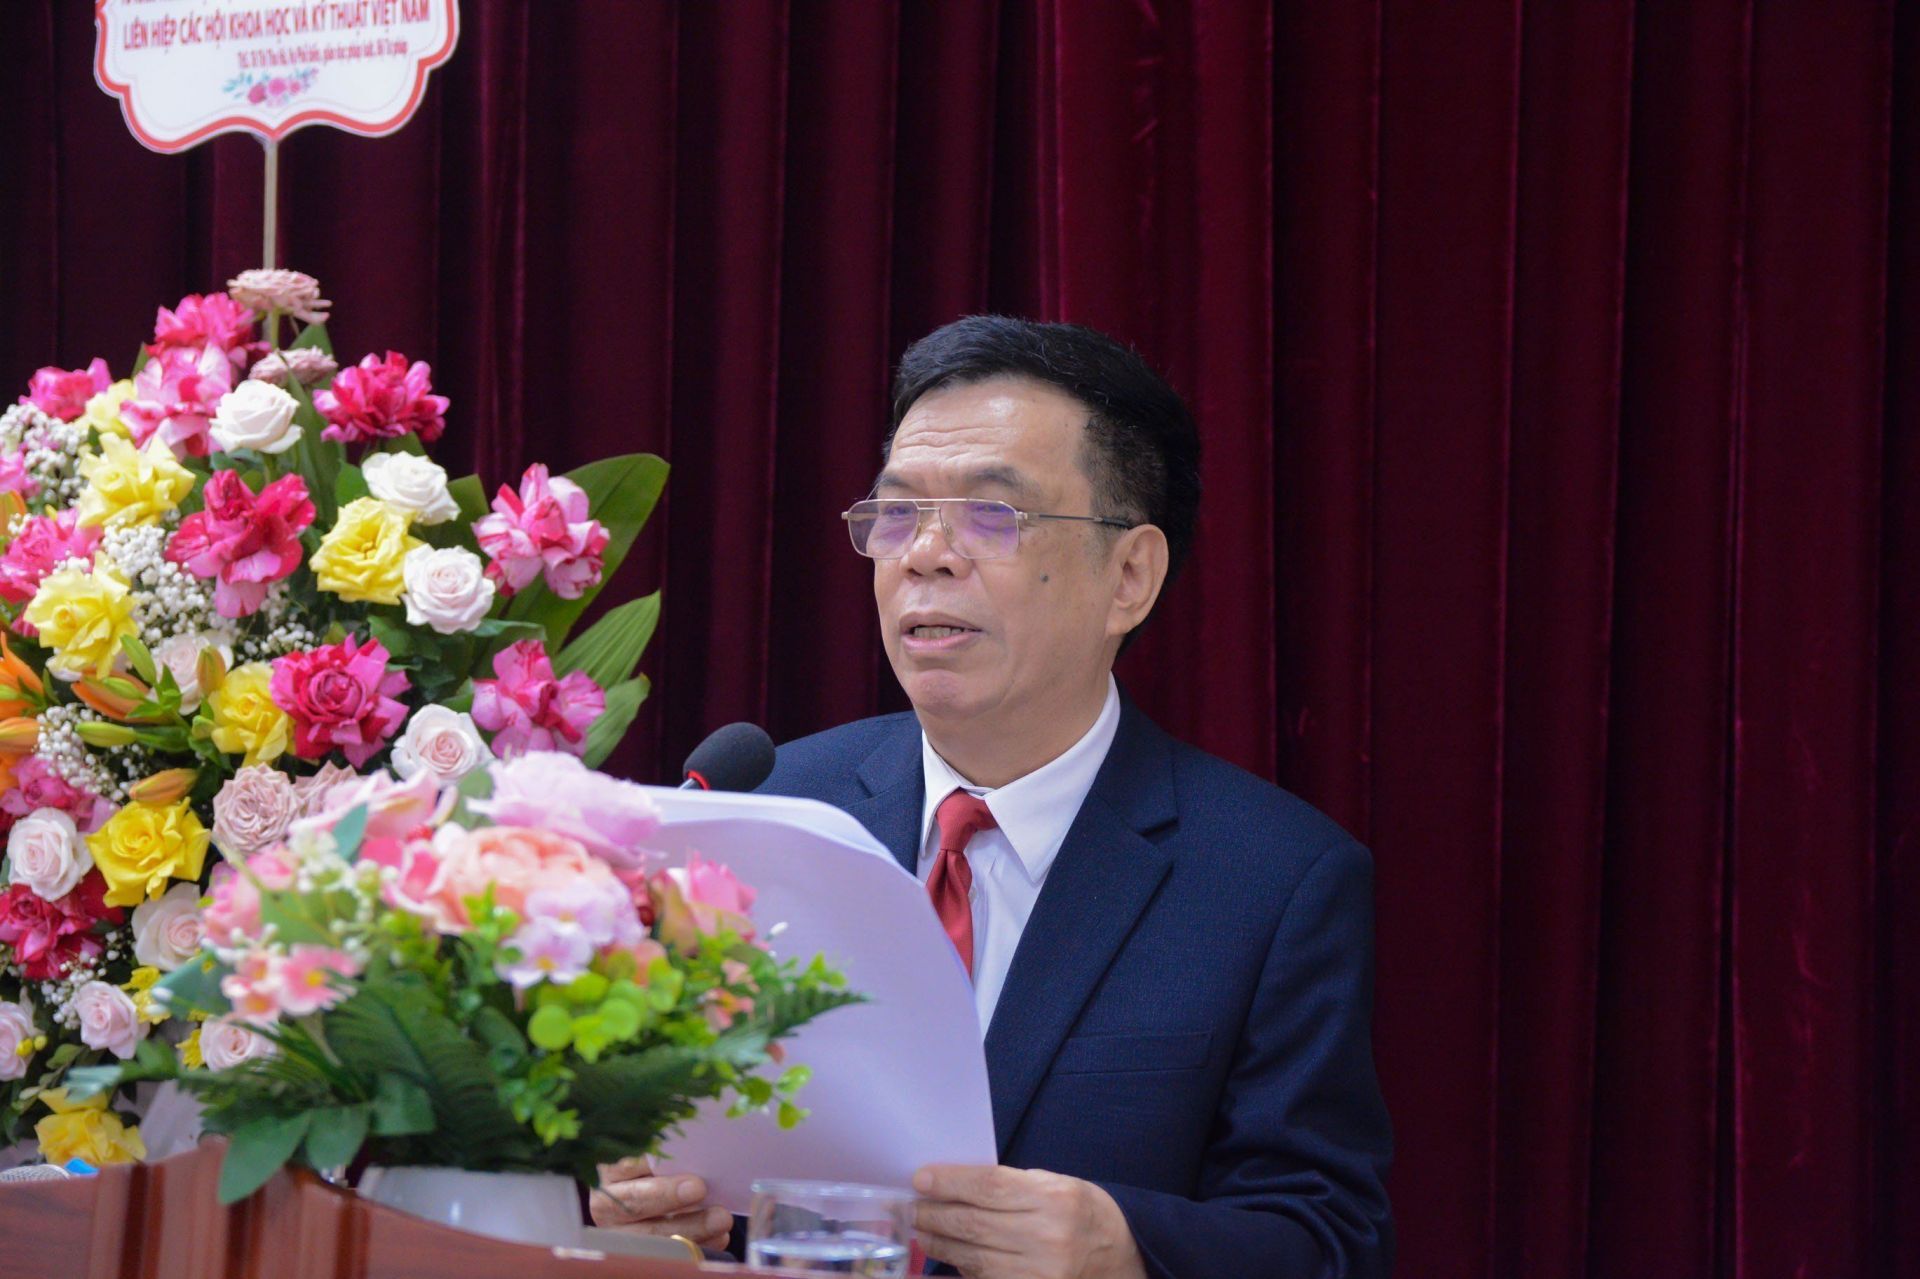 PGS.TS Nguyễn Tất Viễn, Viện trưởng Viện Chính sách, Pháp luật và Quản lý nhiệm kỳ 2023-2028 phát biểu.